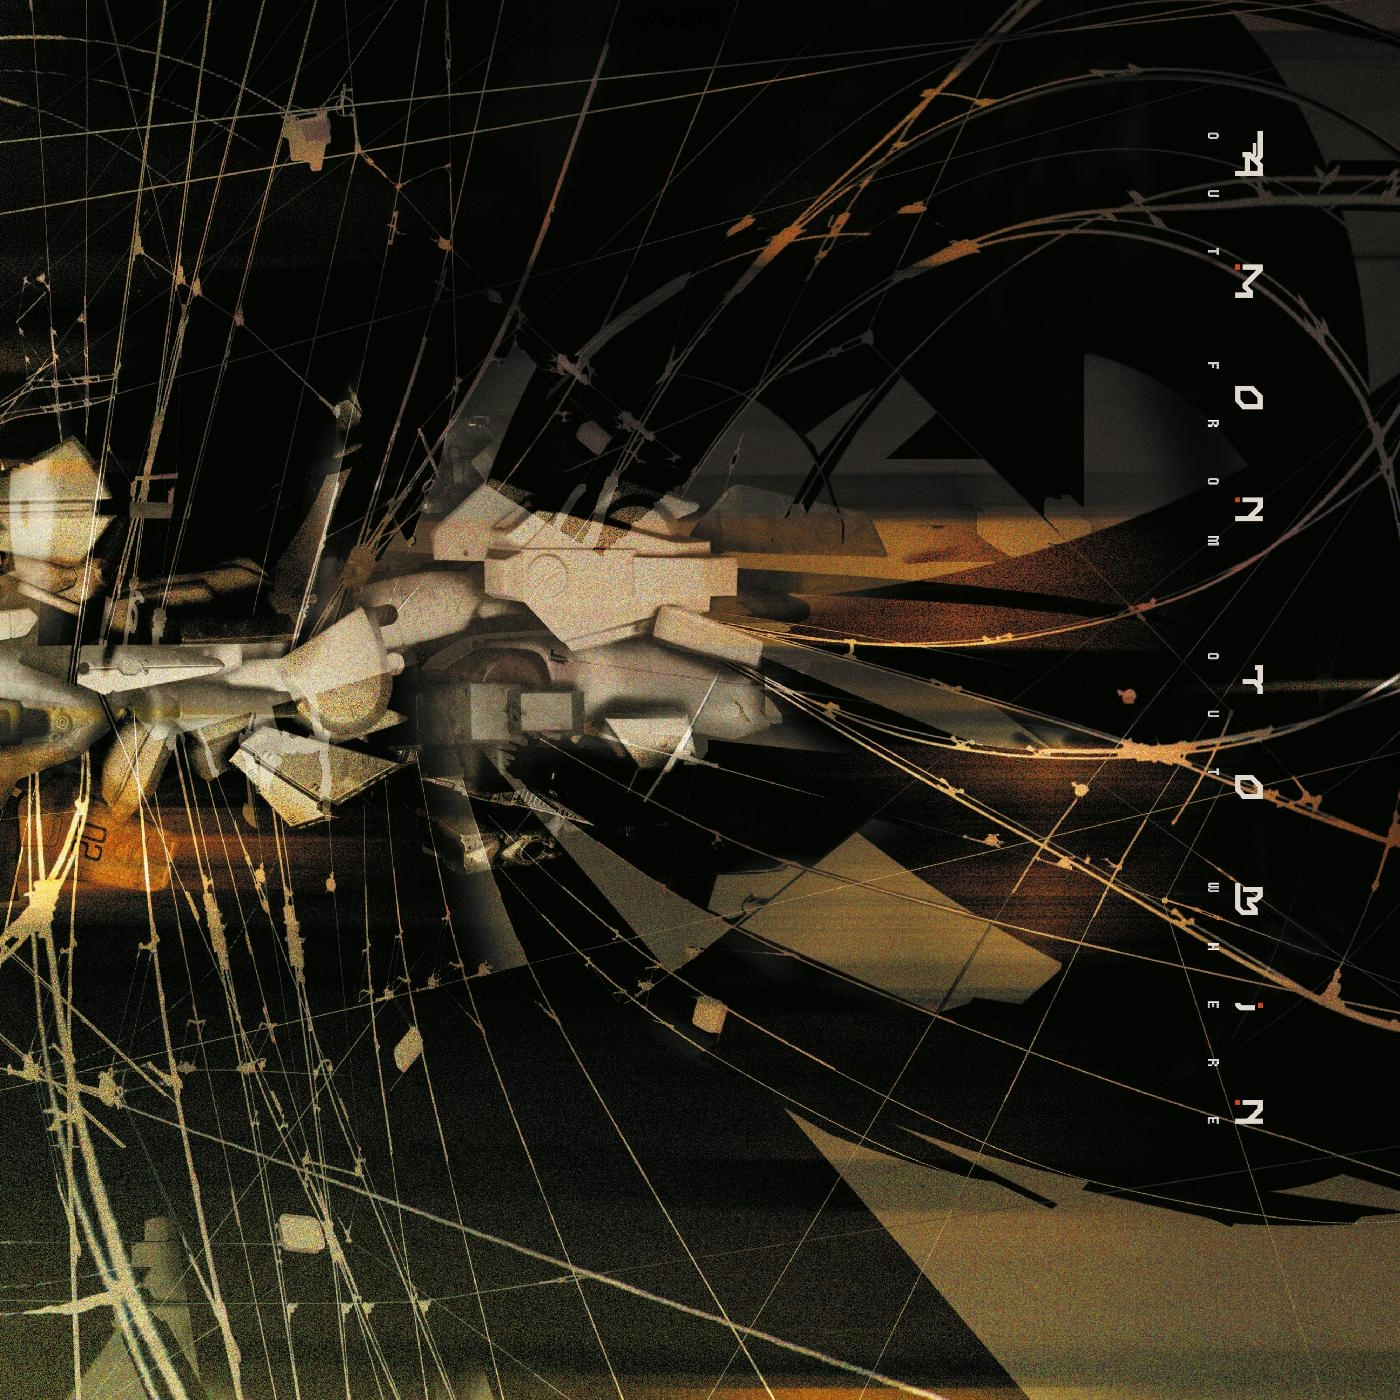 Album artwork for Album artwork for Out From Out Where by Amon Tobin by Out From Out Where - Amon Tobin